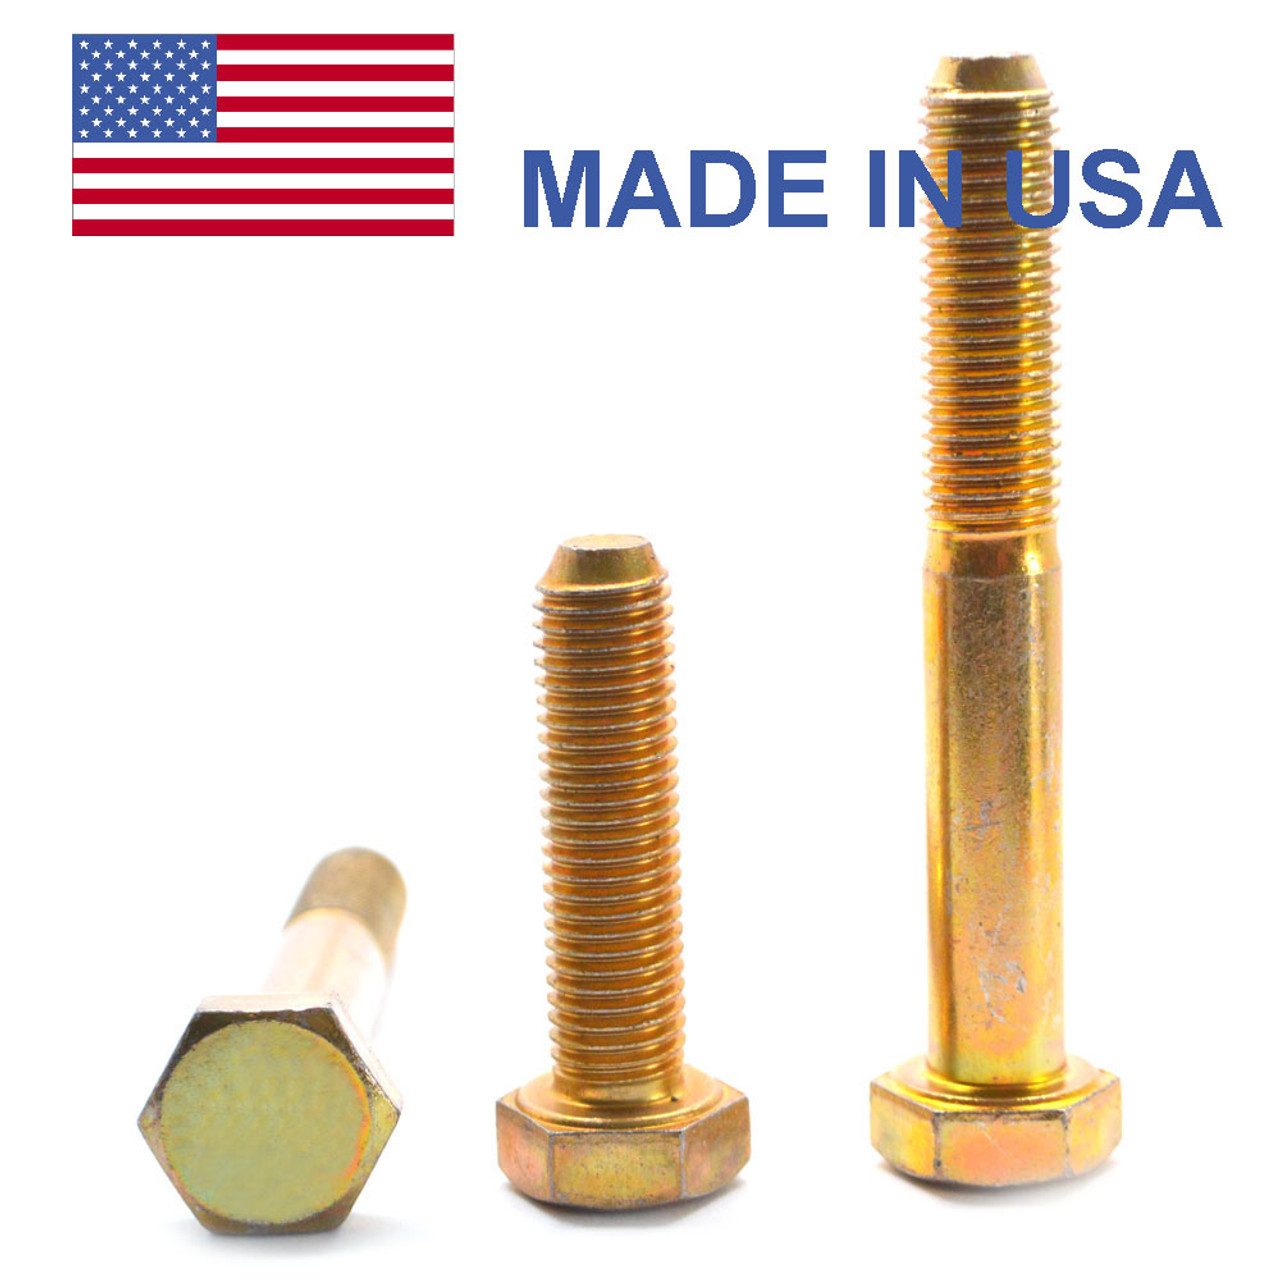 5/16"-24 x 1 1/4" (FT) Fine Thread Grade 8 Hex Cap Screw (Bolt) - USA Alloy Steel Yellow Zinc Plated